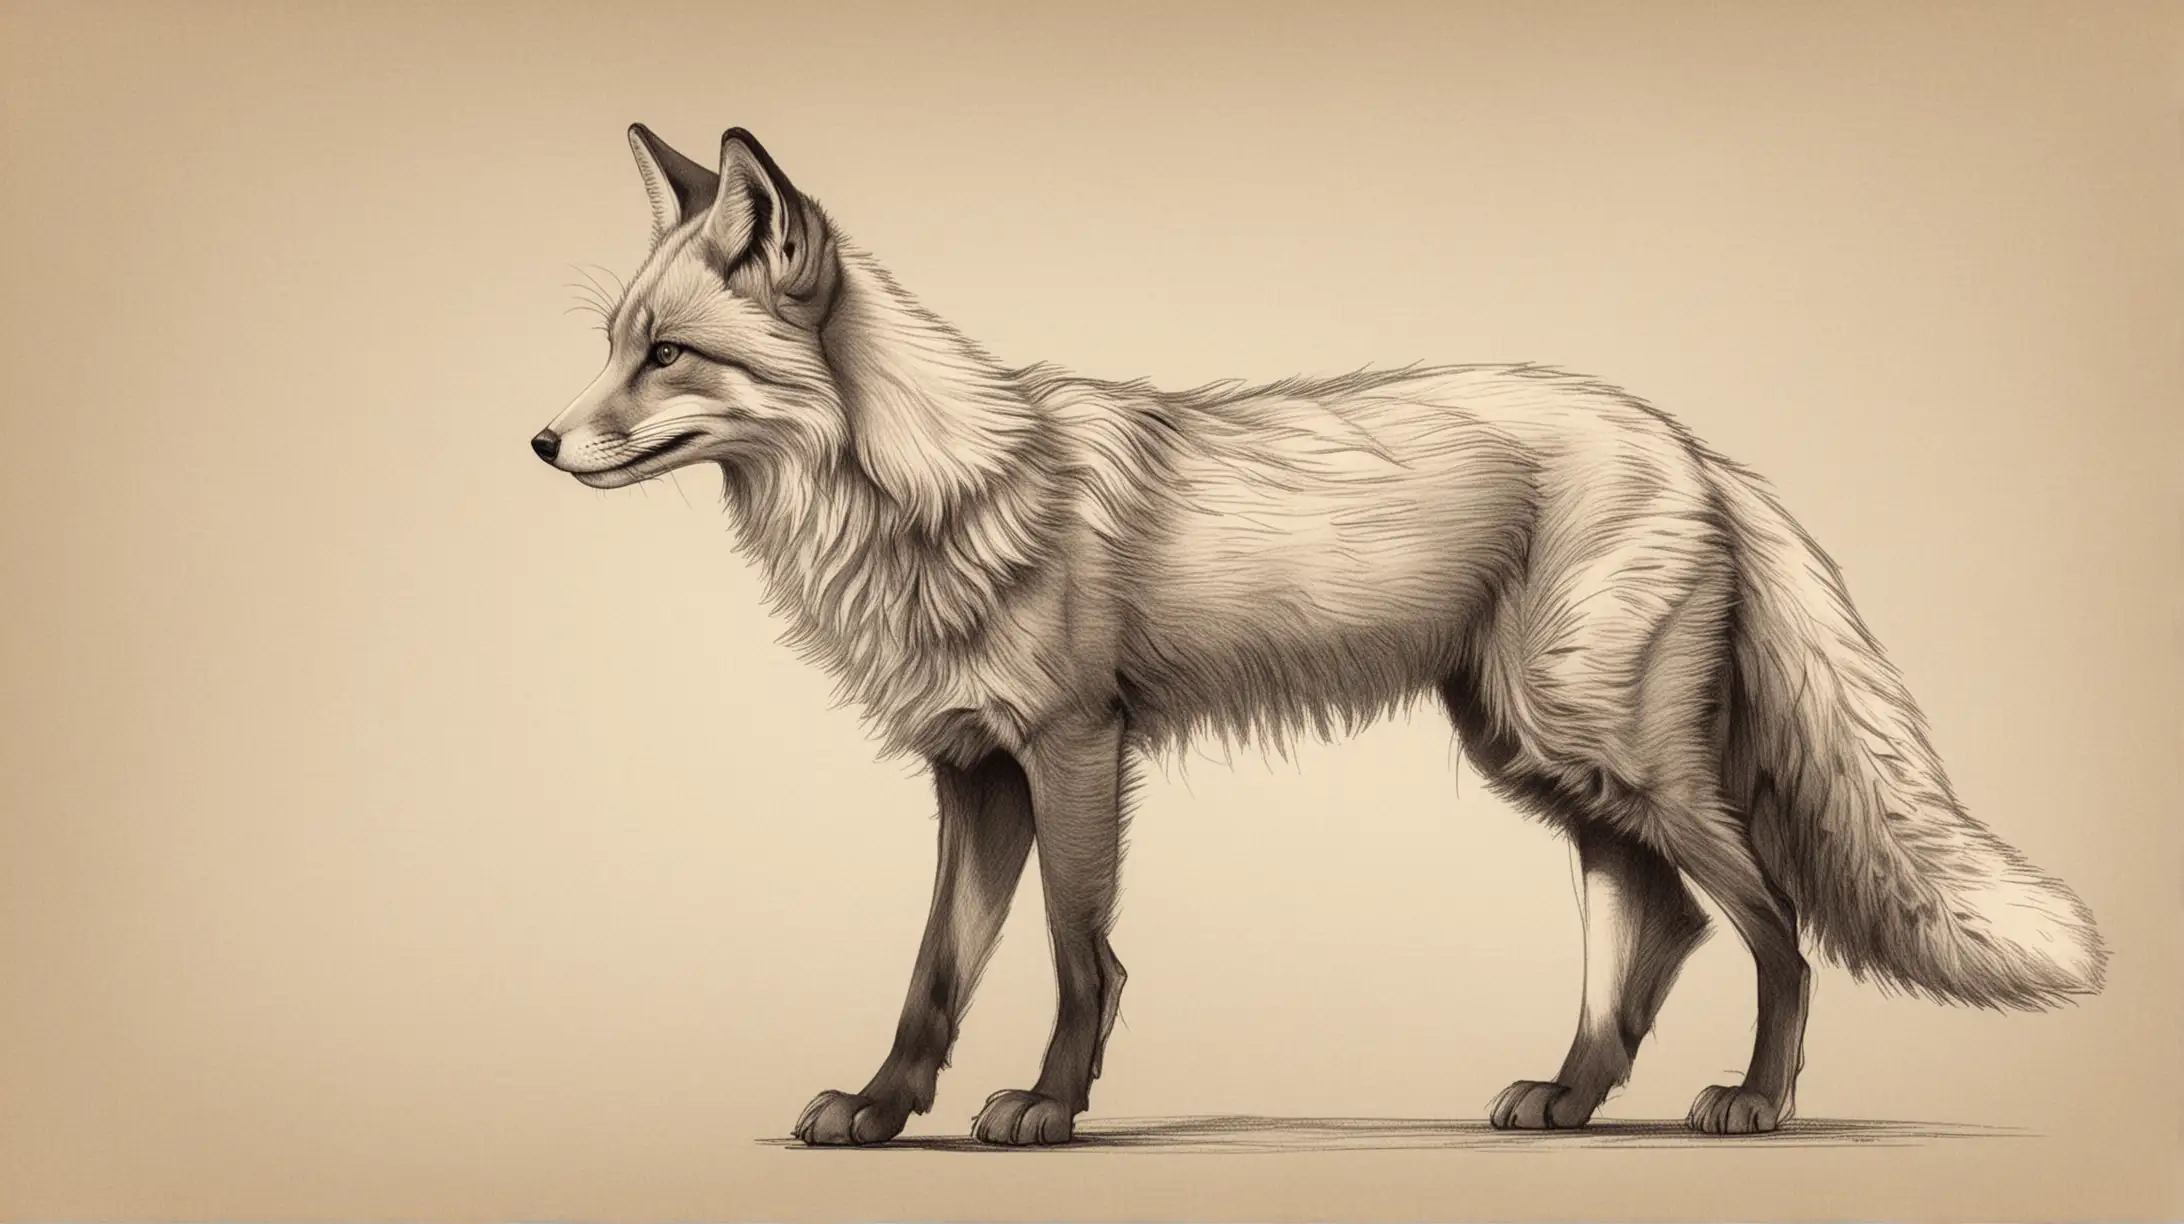 Skizziere einen majestätischen Fuchs in einer einfachen 2D-Seitenansicht, wobei sein buschiger Schwanz charakteristisch herausragt, aber ohne zu viele Details